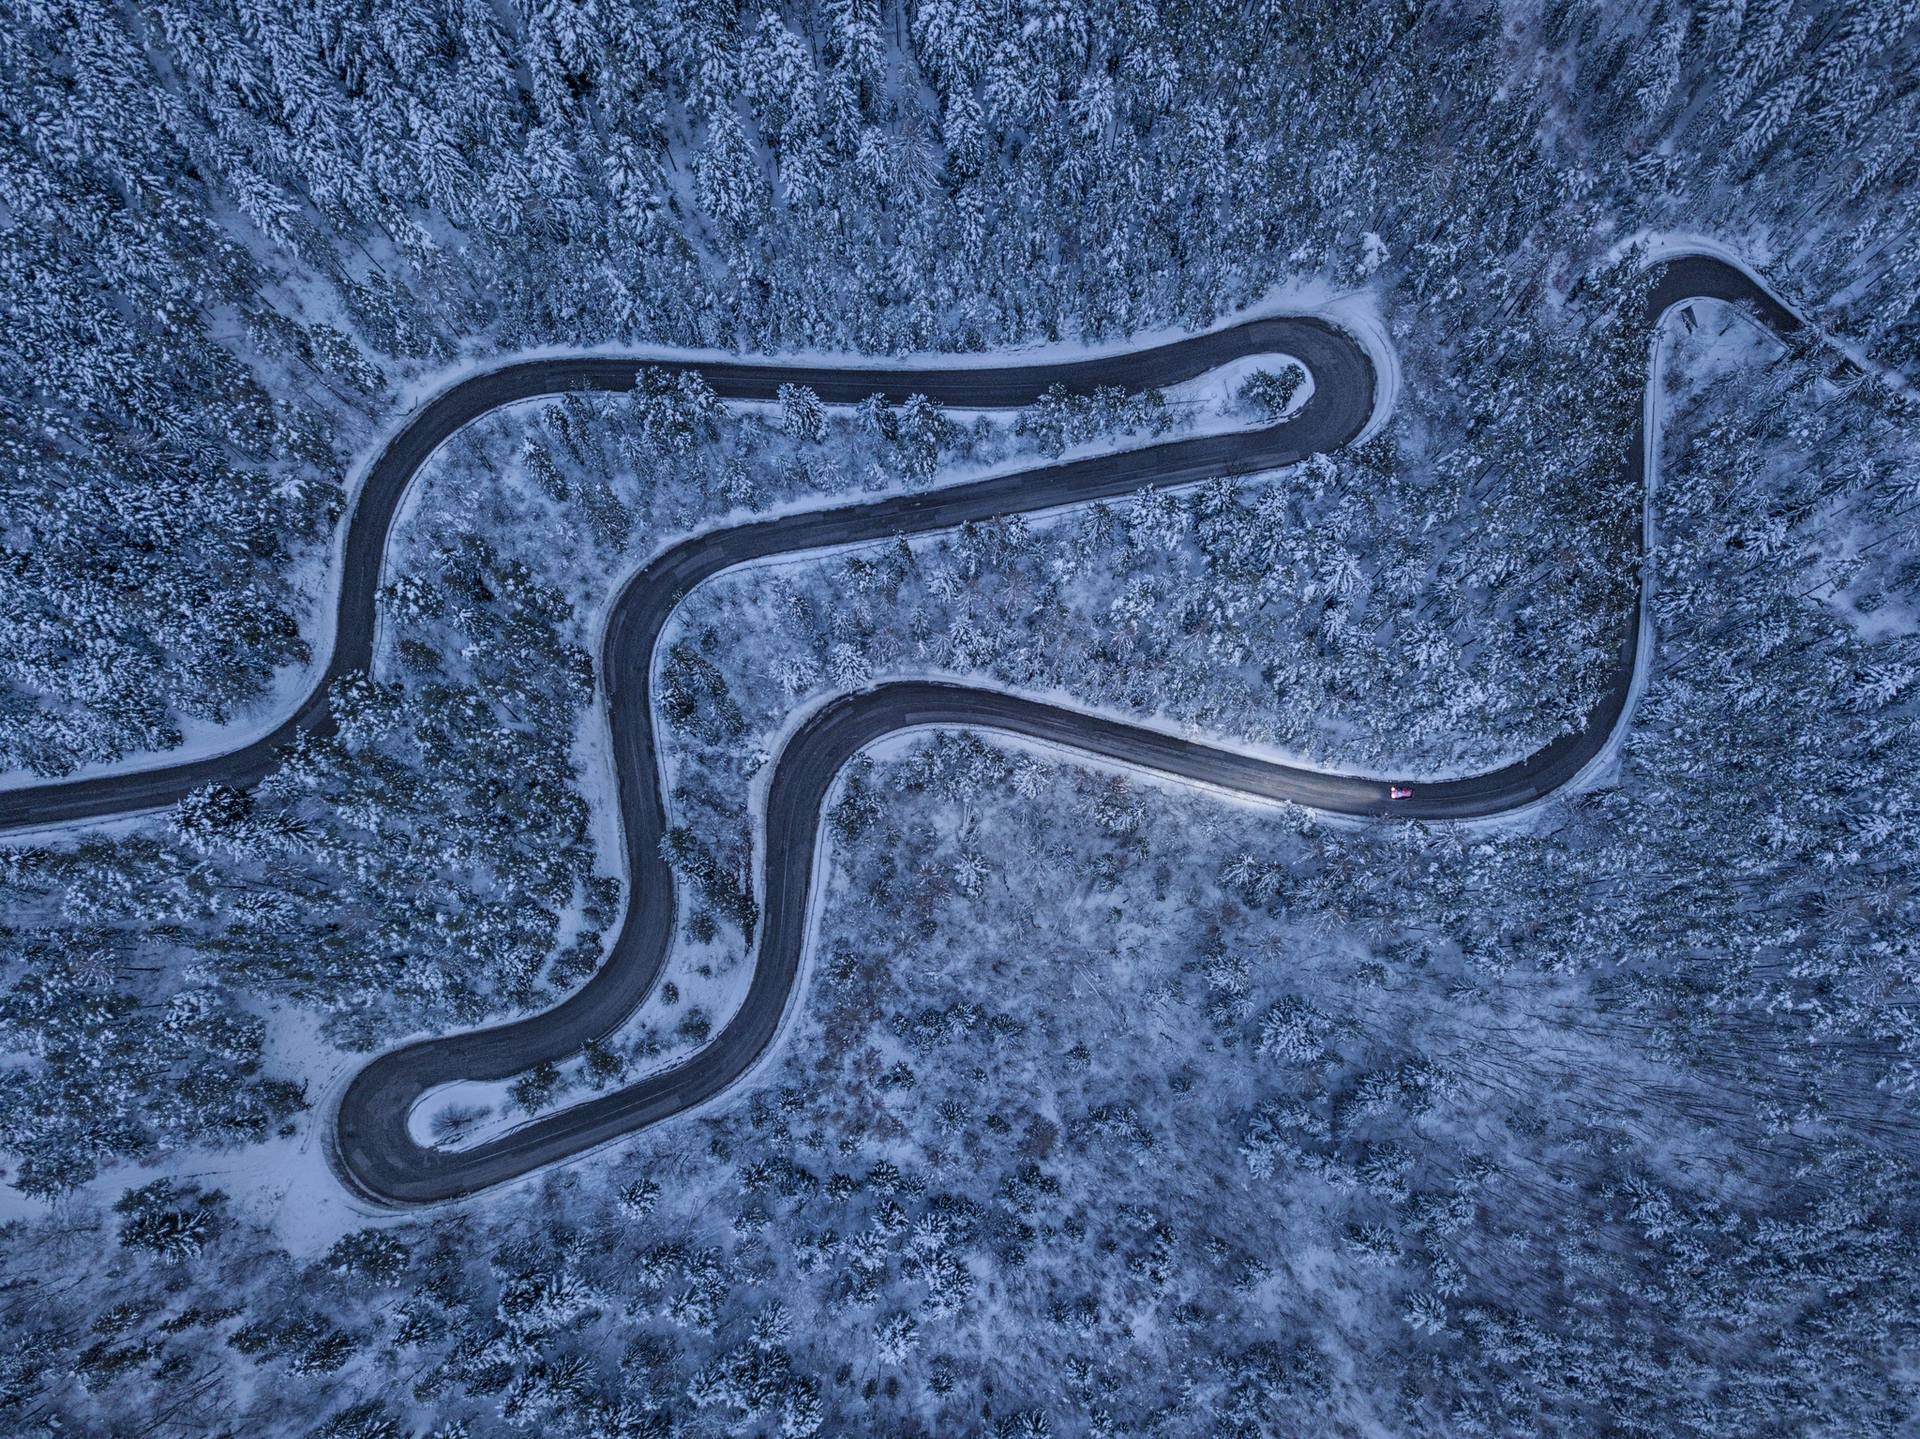 Аэрофотография извилистой дороги в зимнем лесу Словакии. Автор Петер Свобода